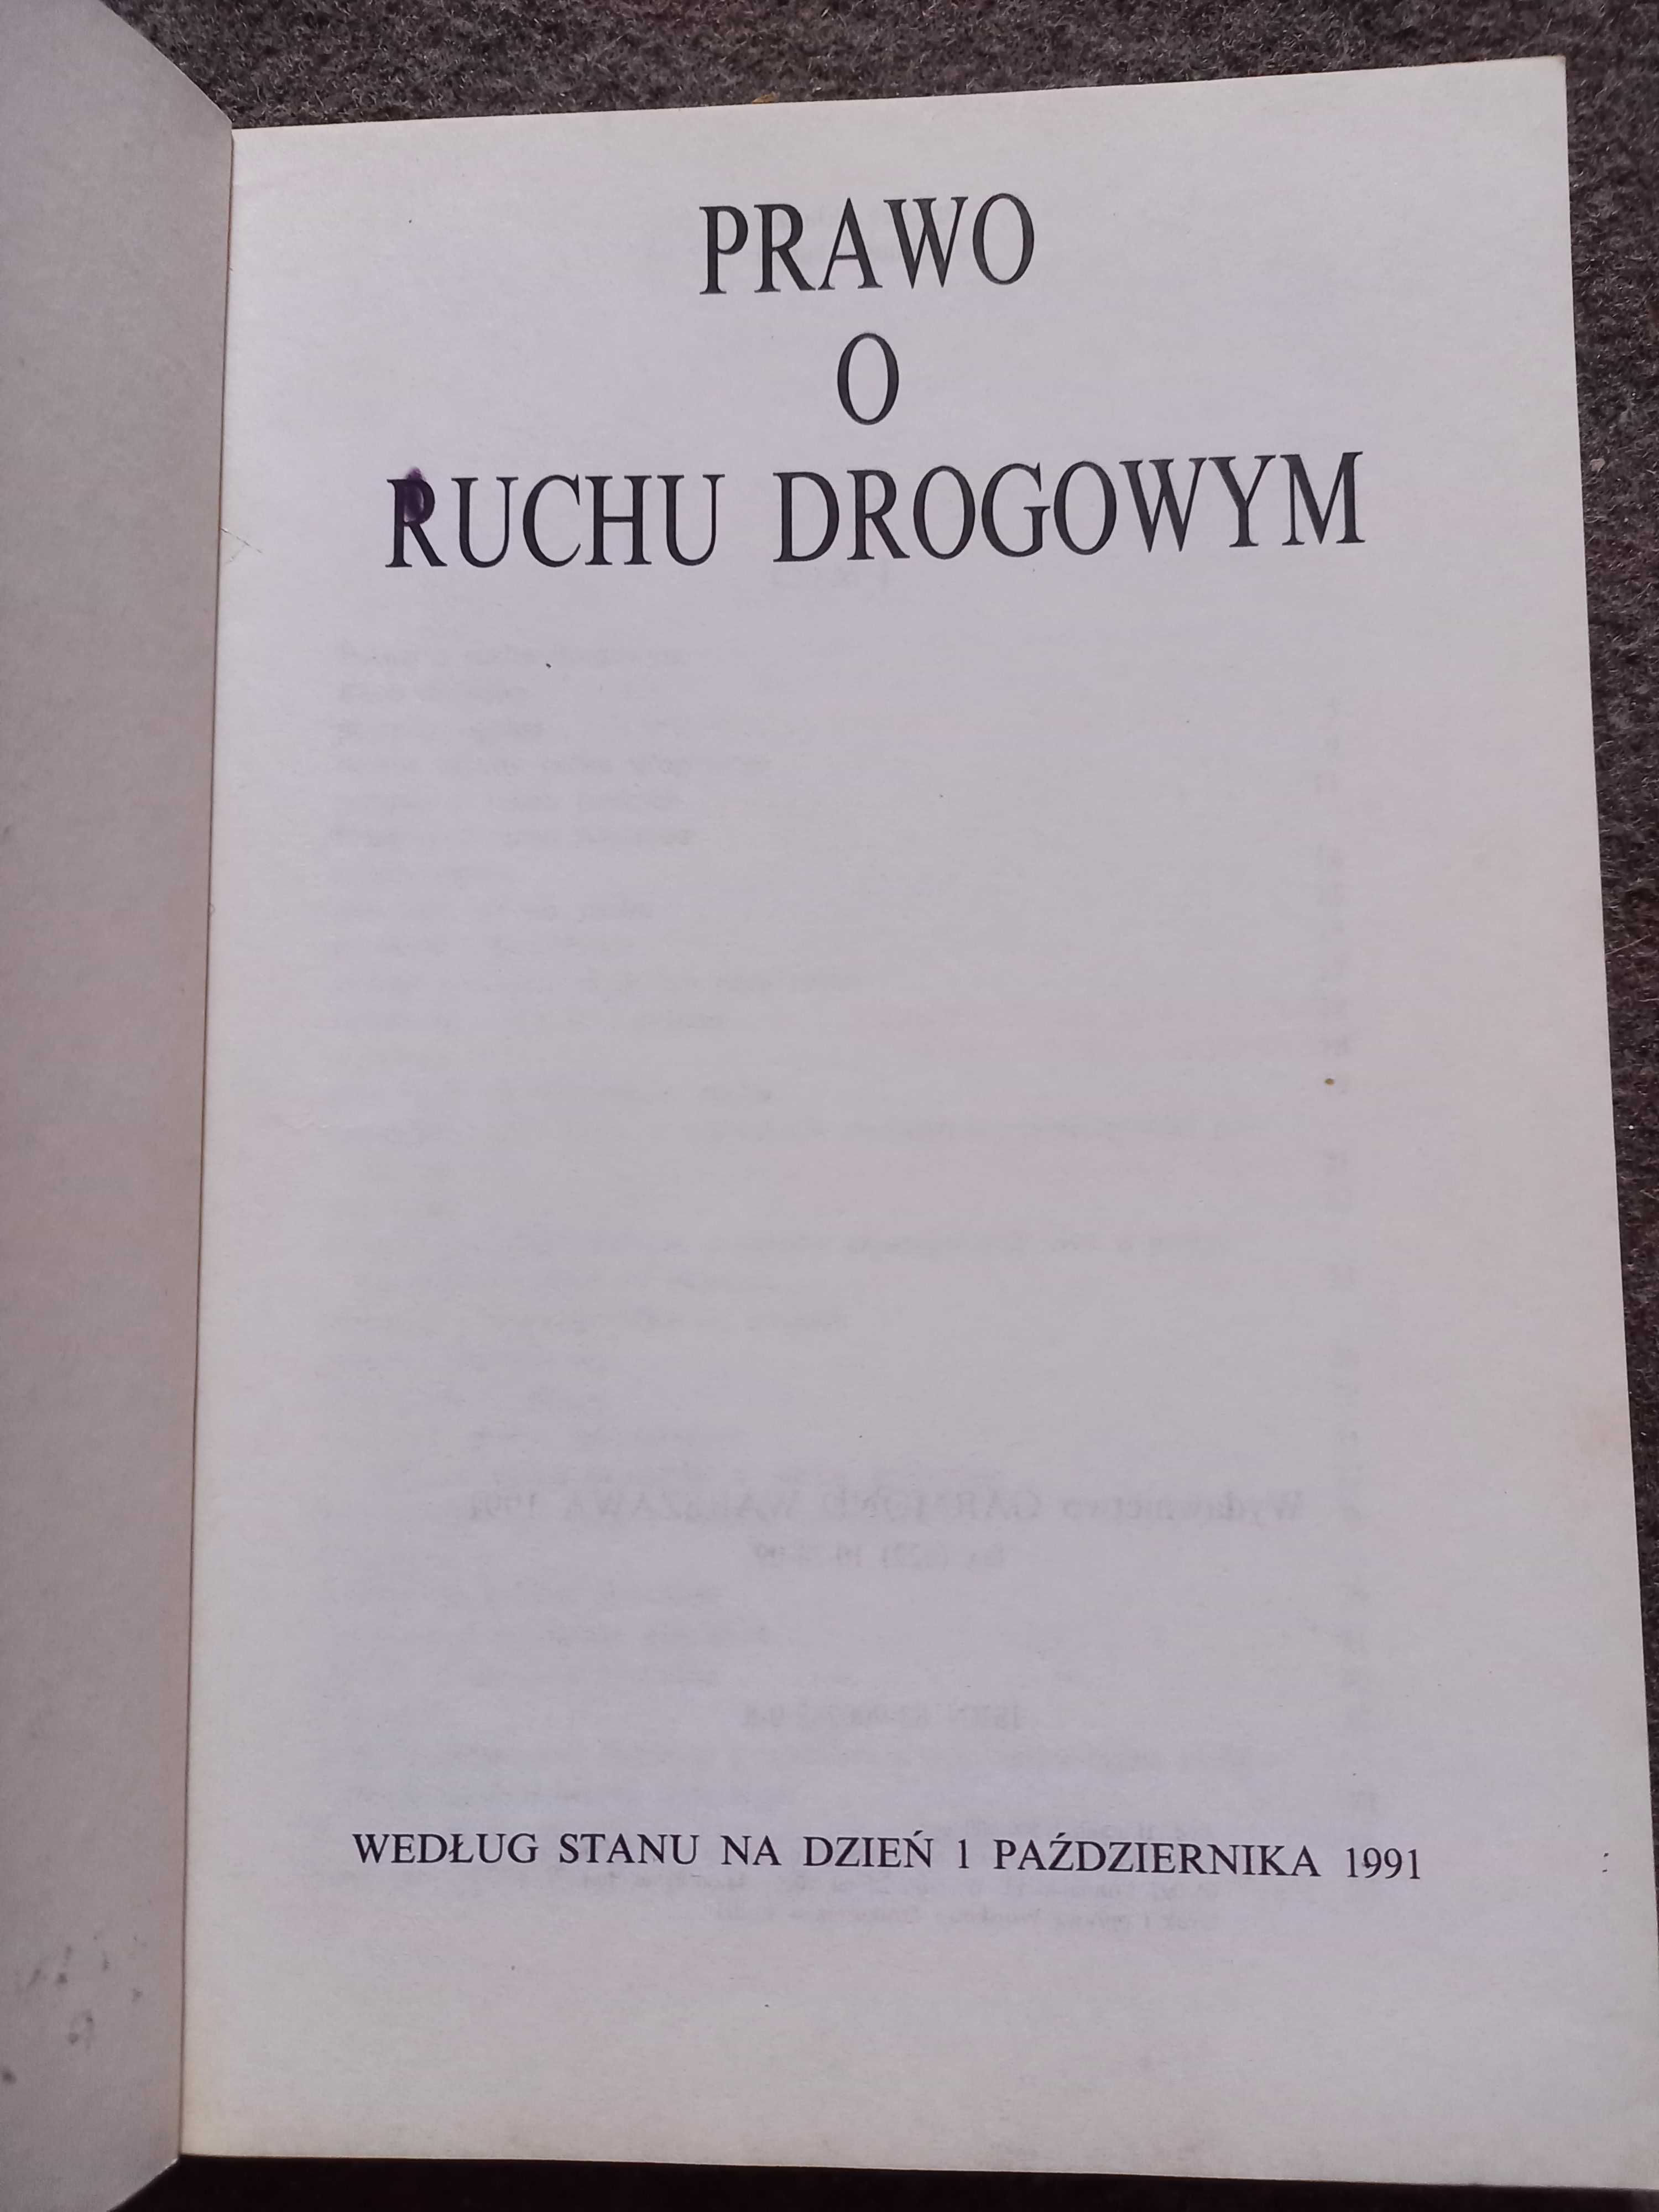 Kodeks drogowy z 1991 roku PRL